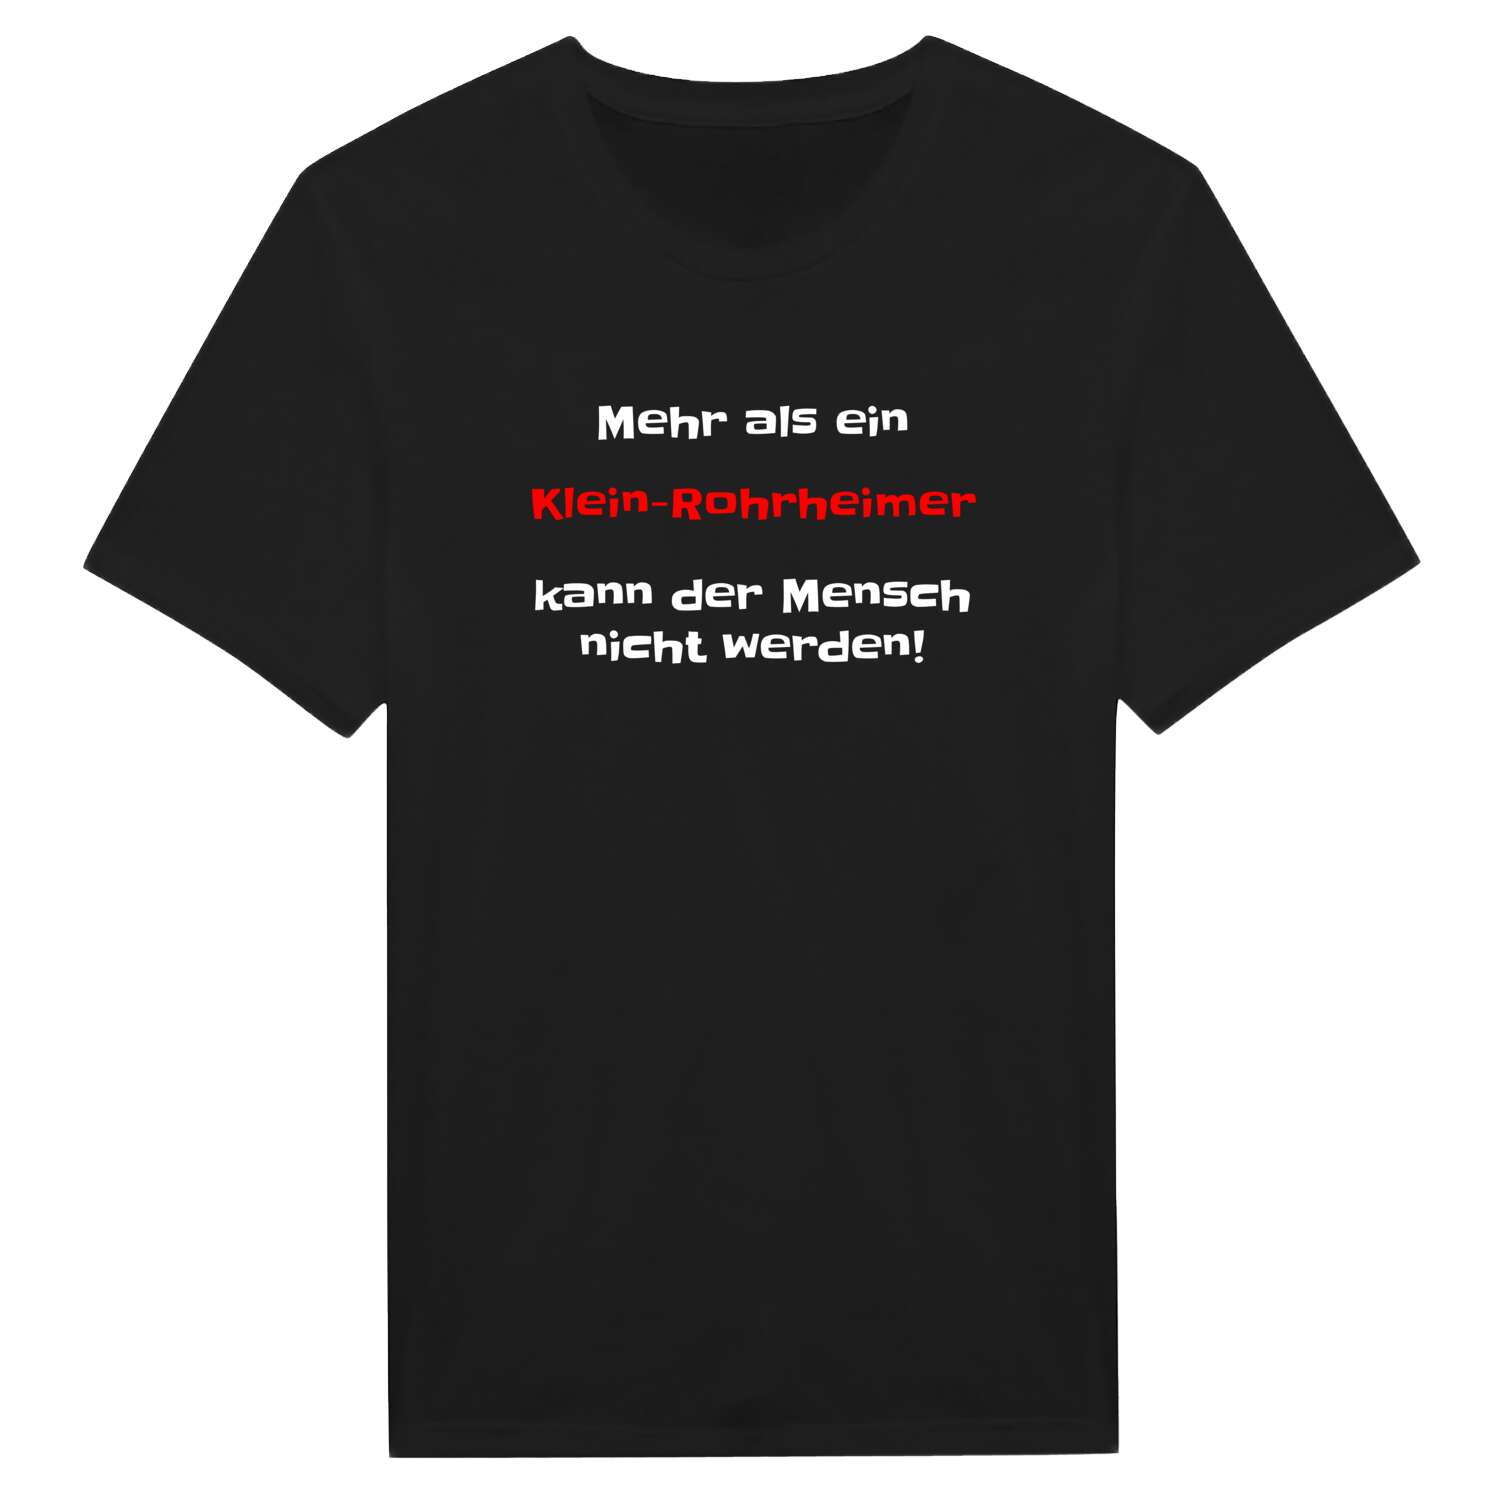 Klein-Rohrheim T-Shirt »Mehr als ein«